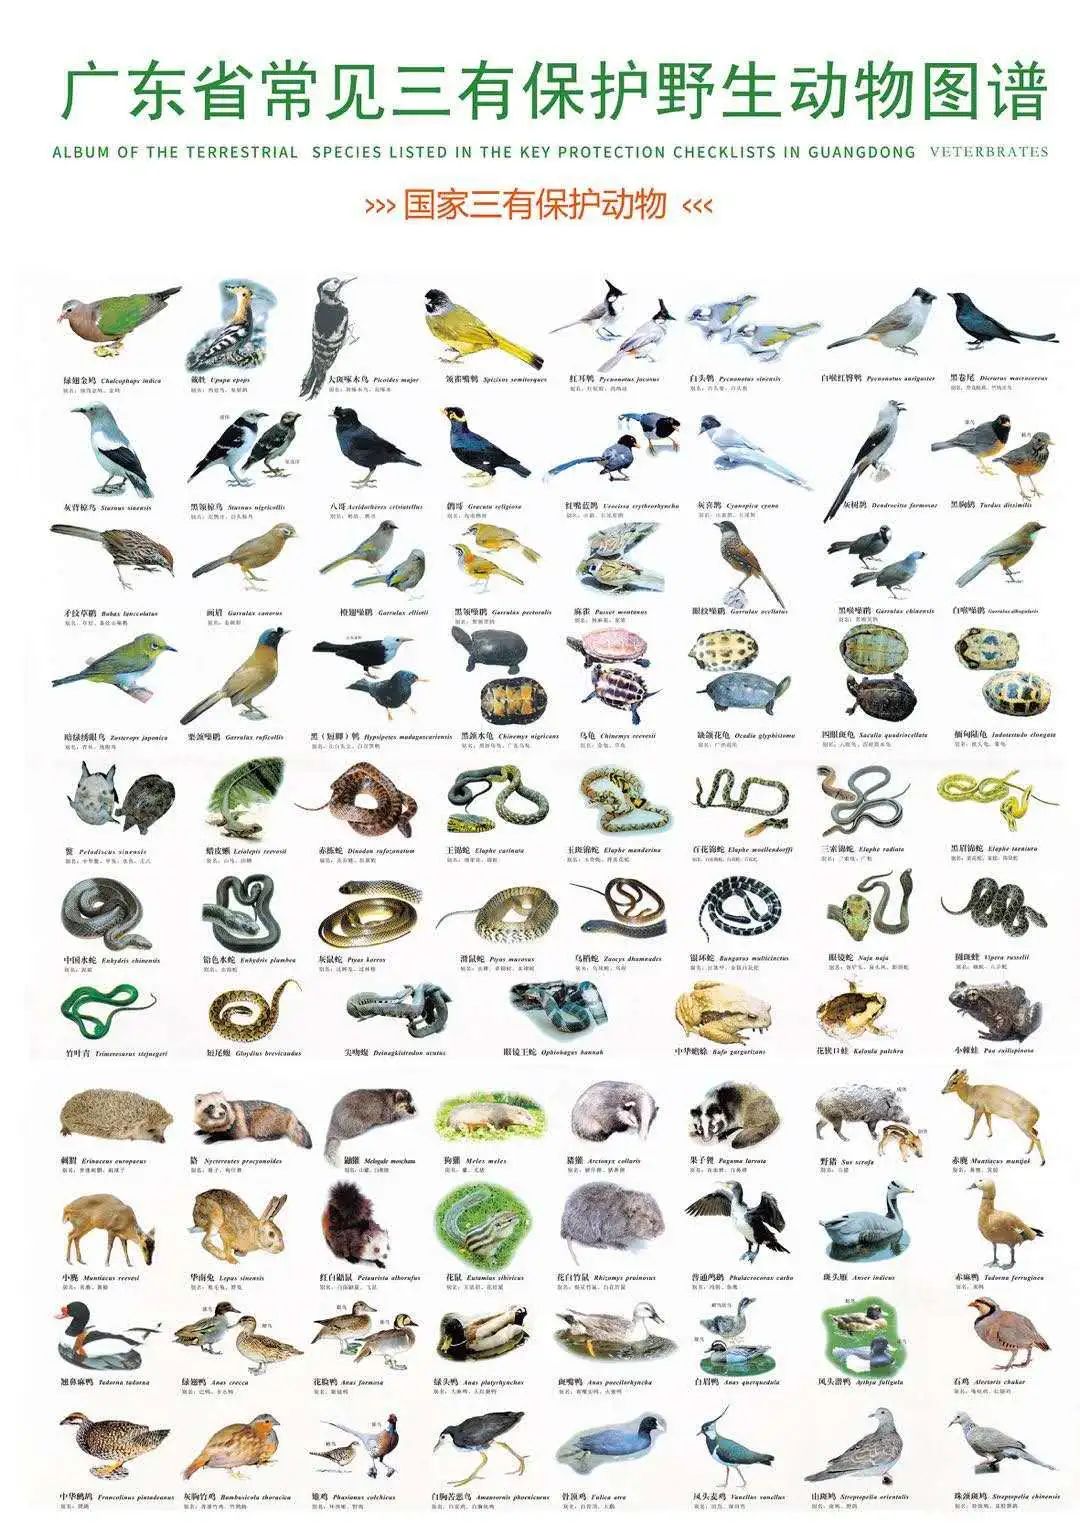 鸟类590种,爬行类150种,两栖类60种),列入国家重点保护野生动物名录的